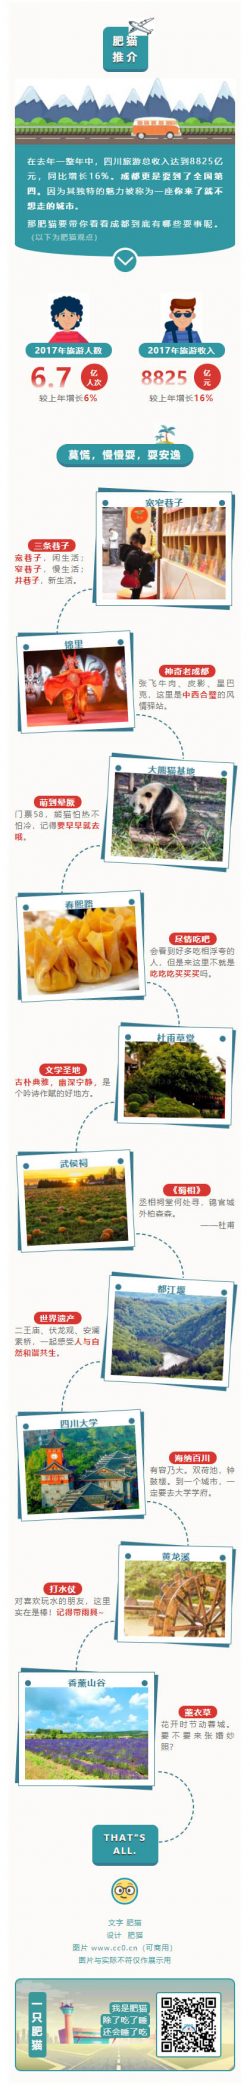 四川旅游深蓝色风景介绍景点推荐微信推送模板